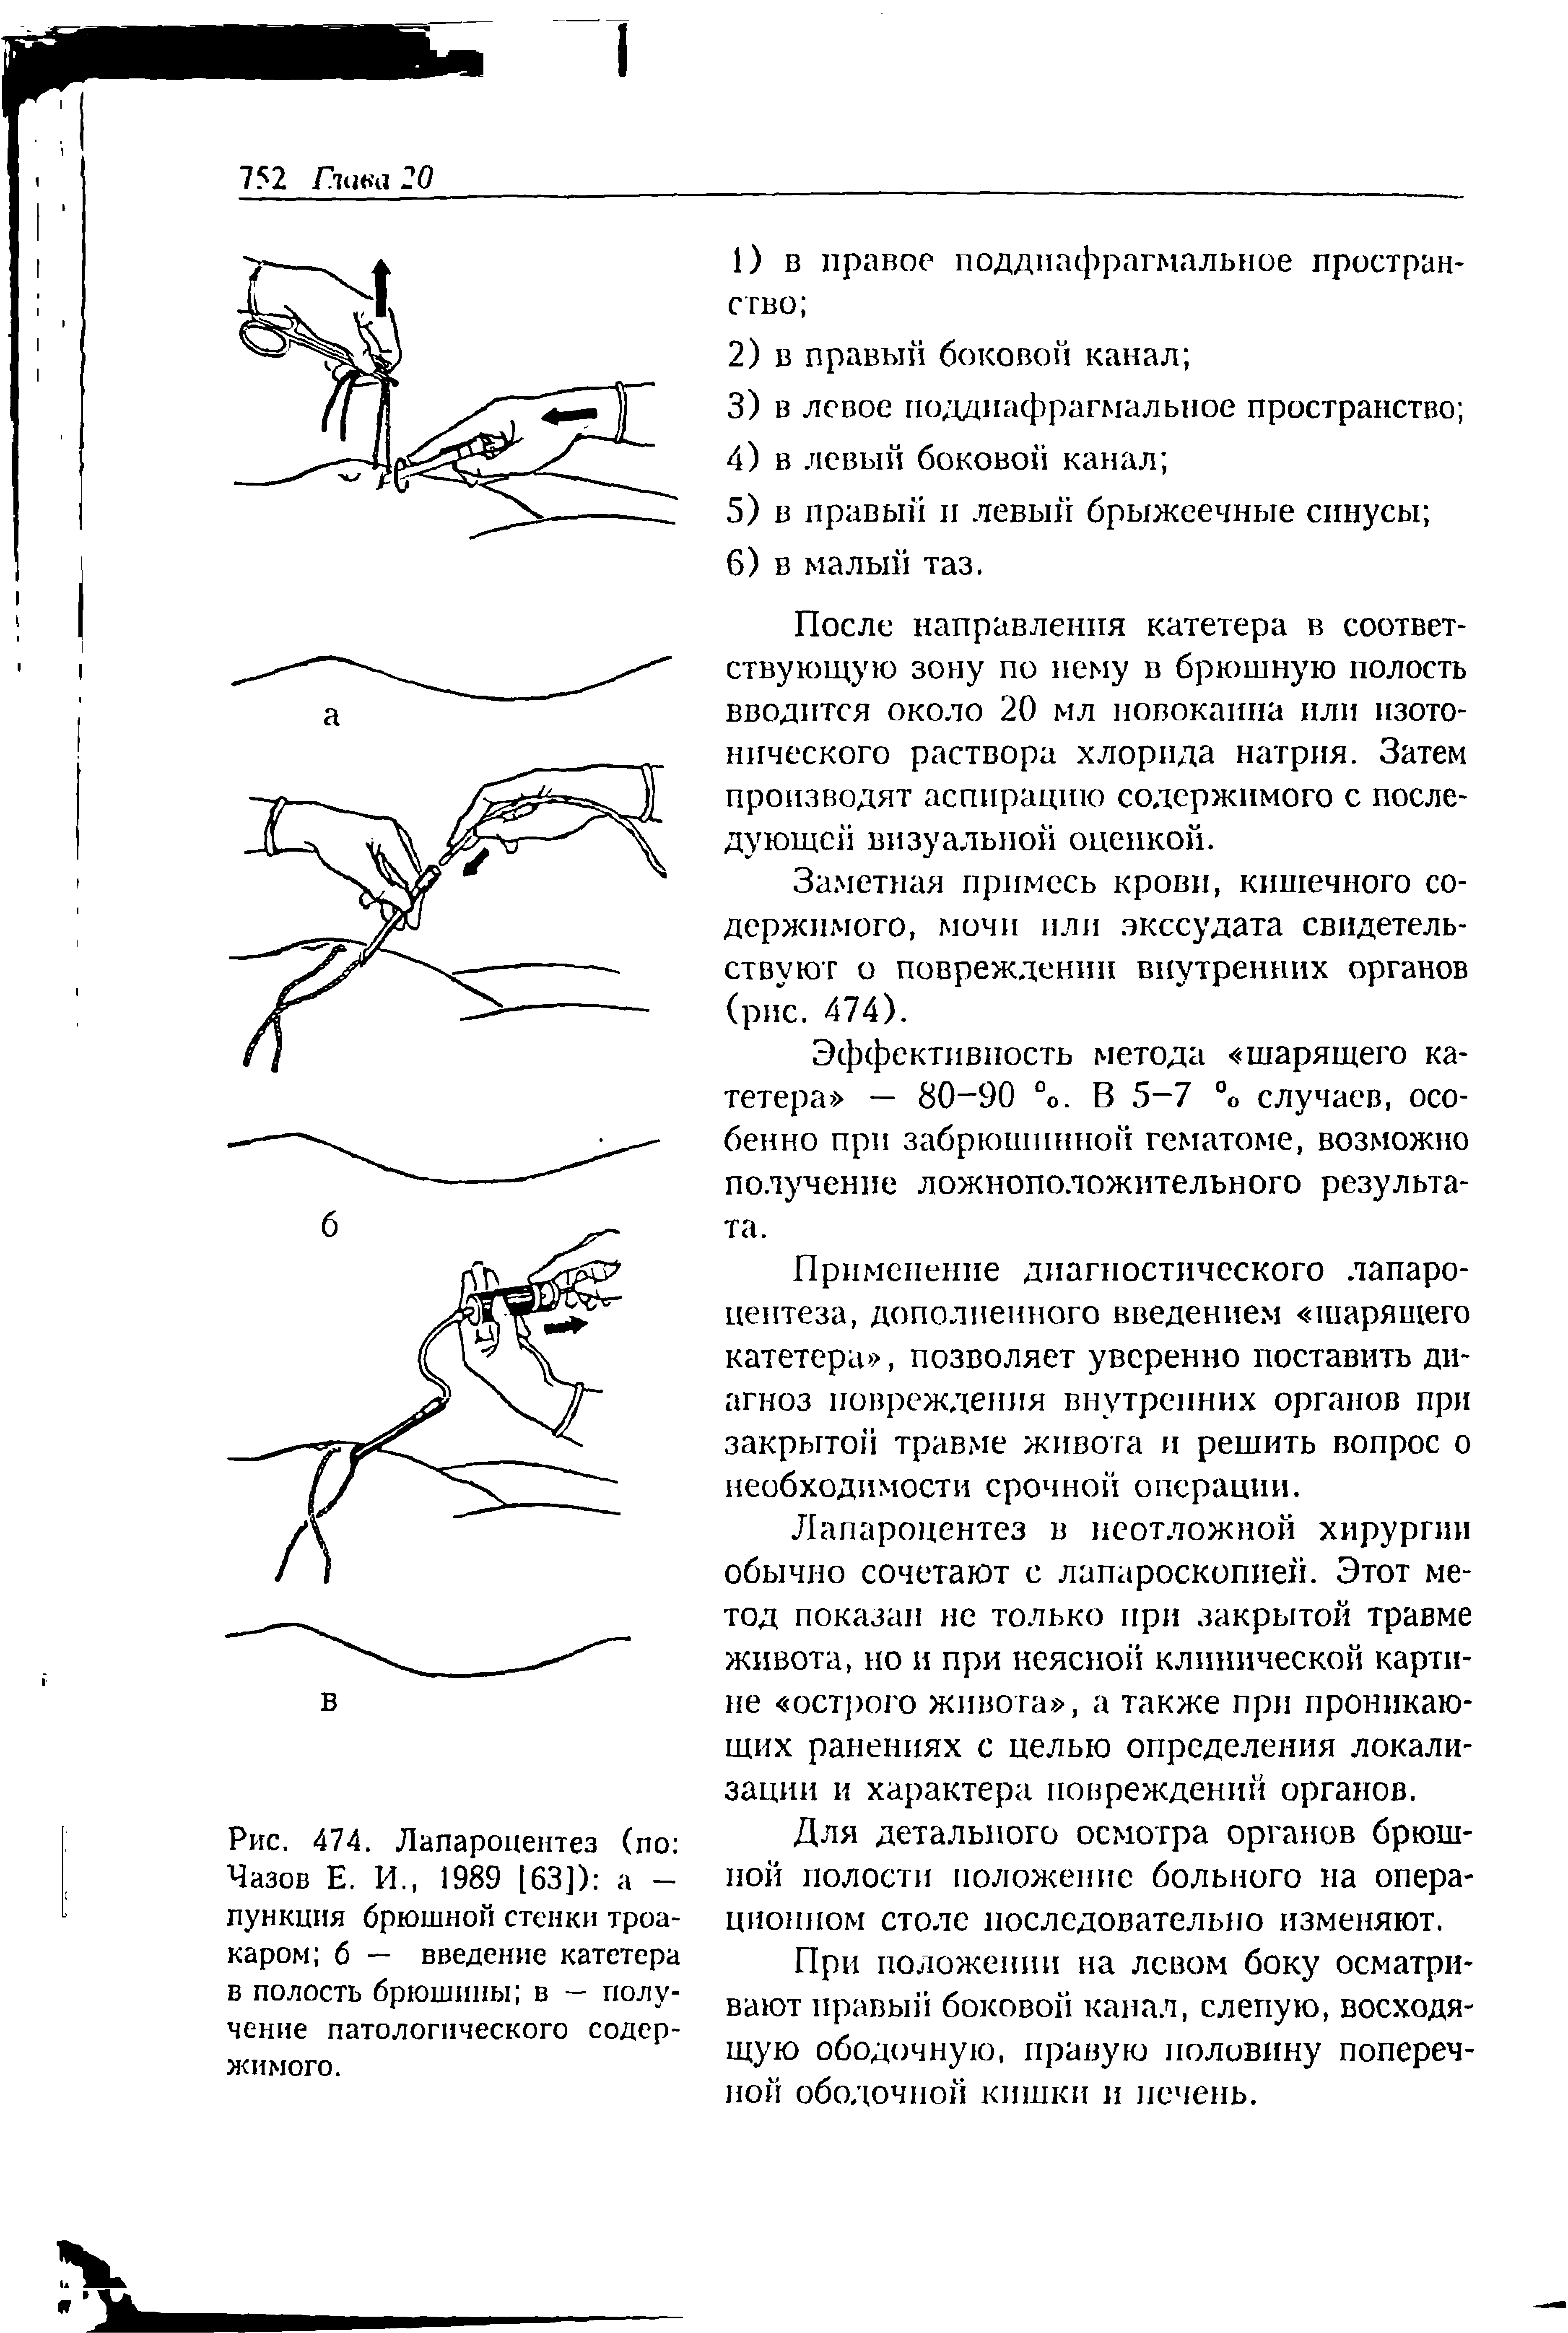 Рис. 474. Лапароцентез (по Чазов Е. И., 1989 [63]) а -пункция брюшной стенки троакаром б — введение катетера в полость брюшины в — получение патологического содержимого.